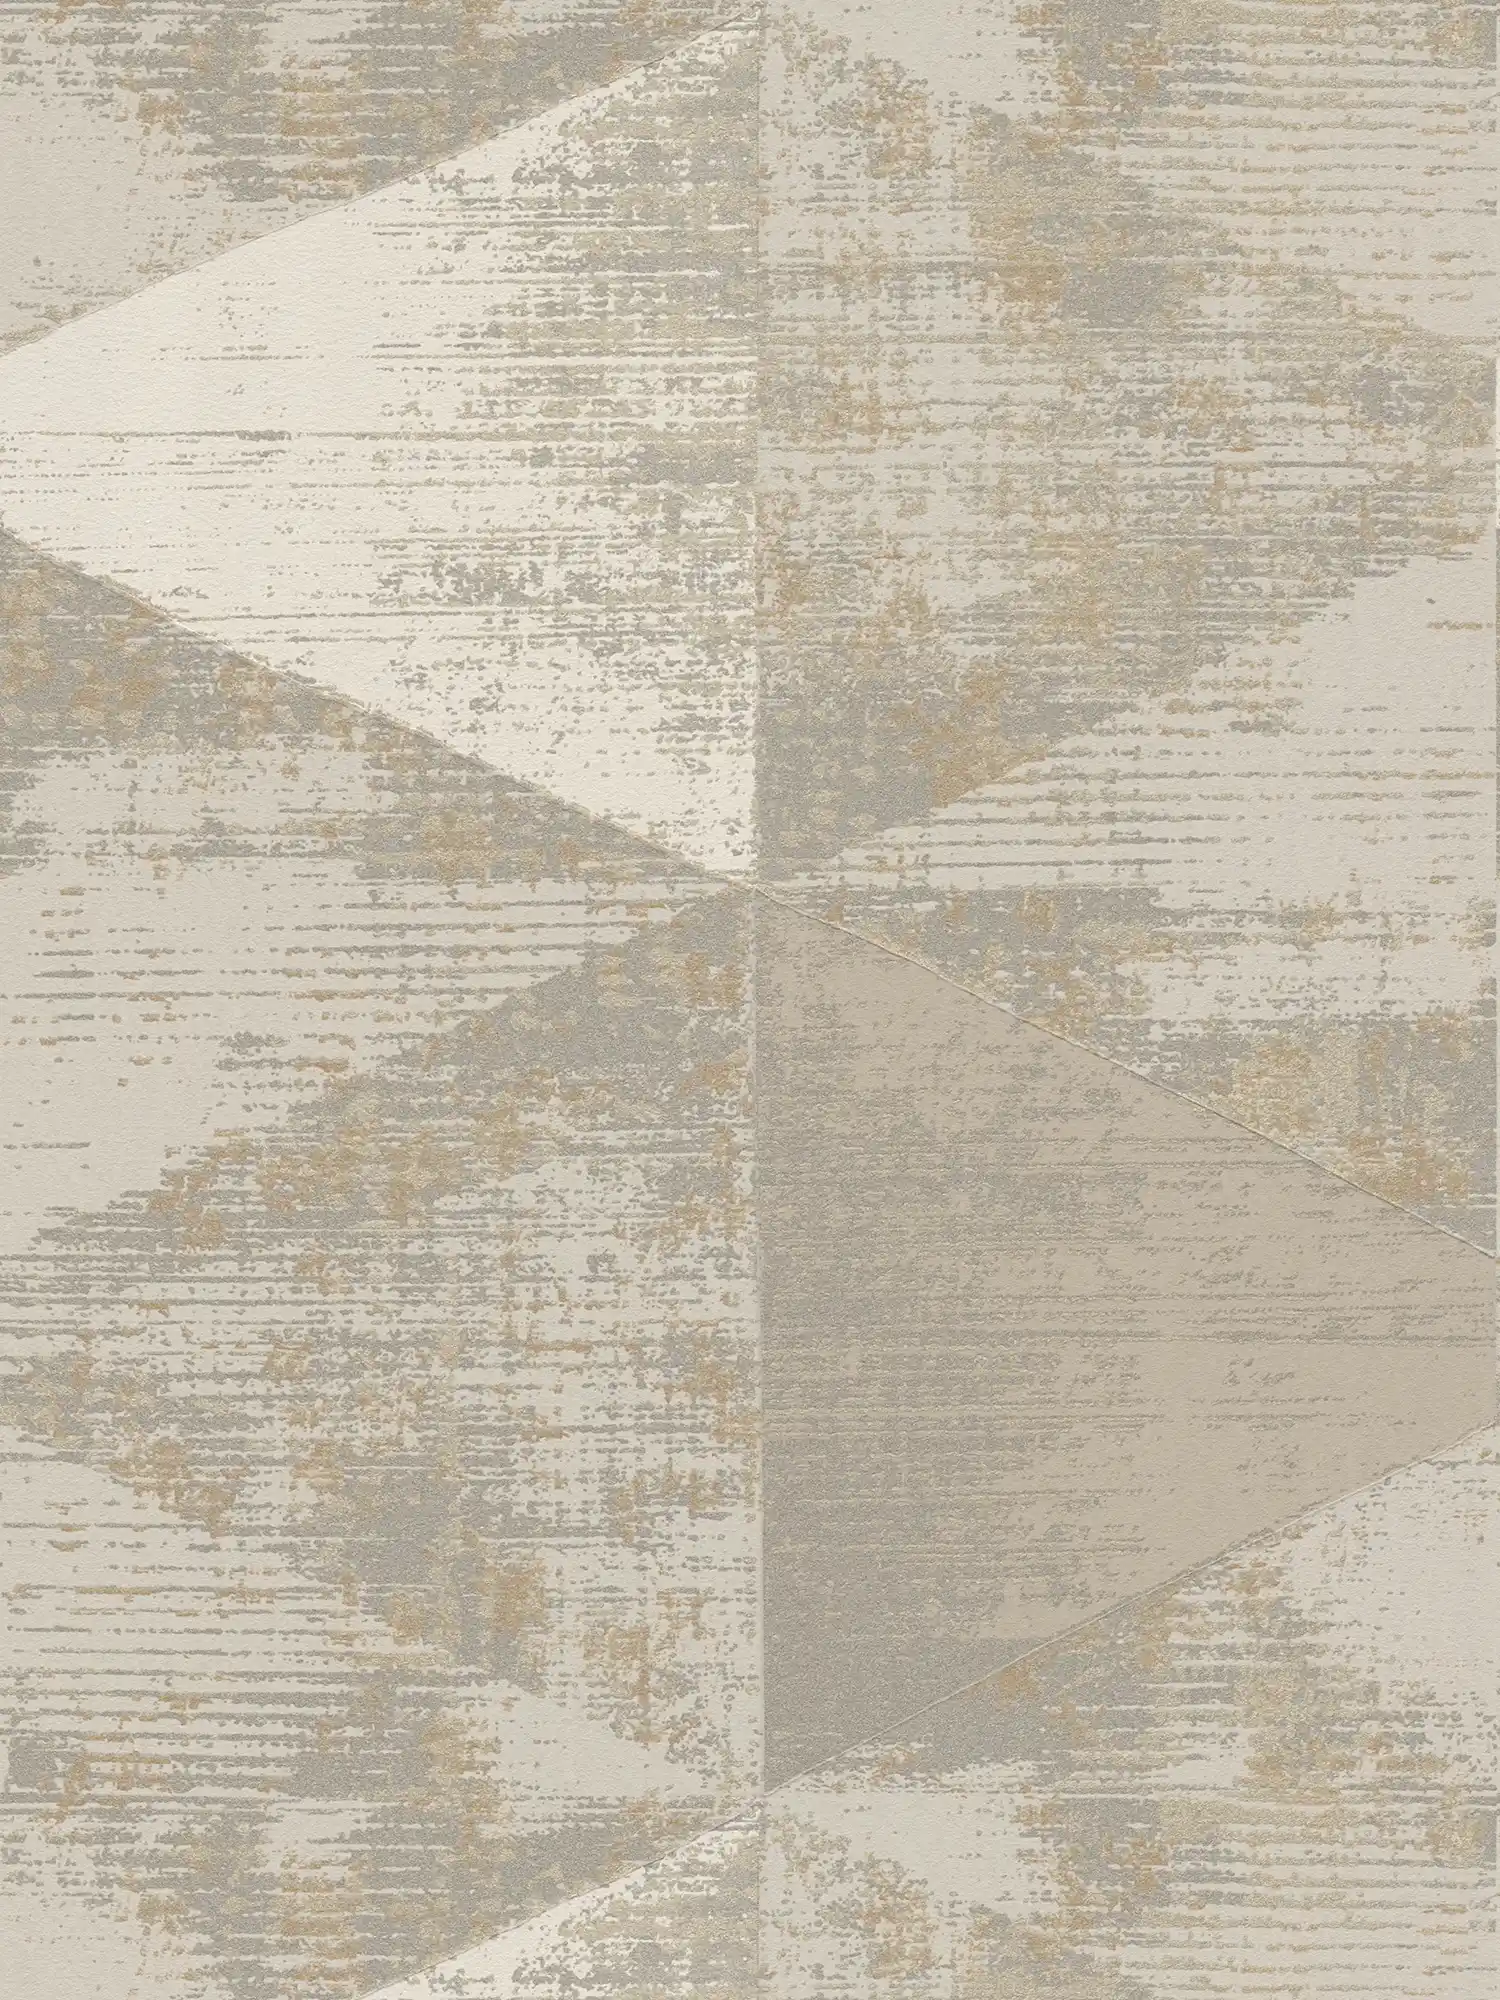         Carta da parati in stile industriale con aspetto metallico rustico - metallizzato, beige, grigio
    